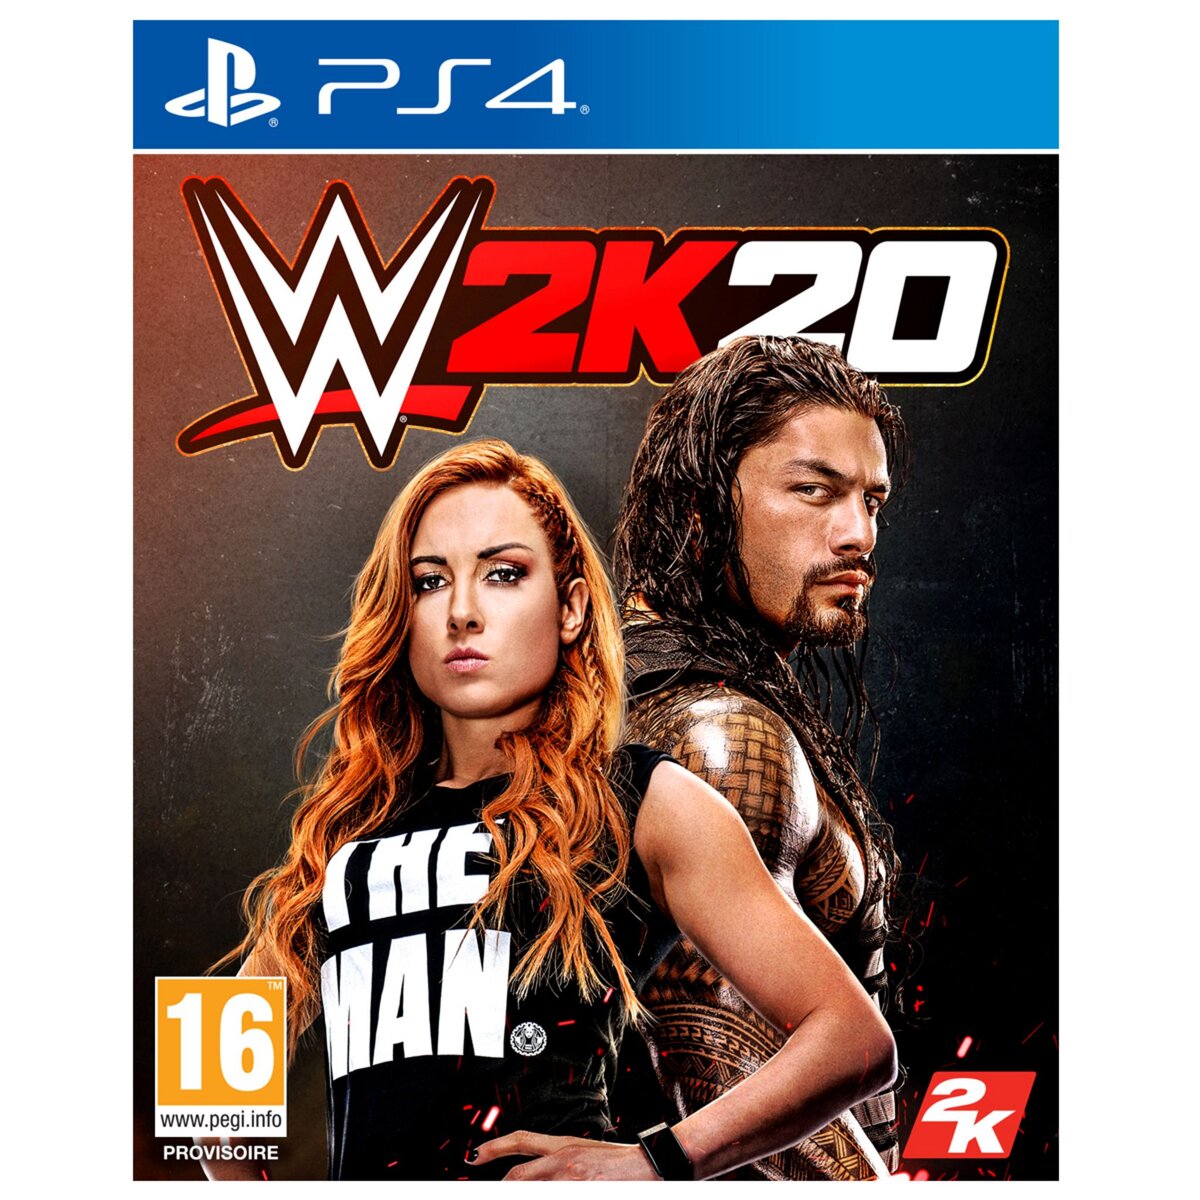 Take 2 WWE 2K20 PS4